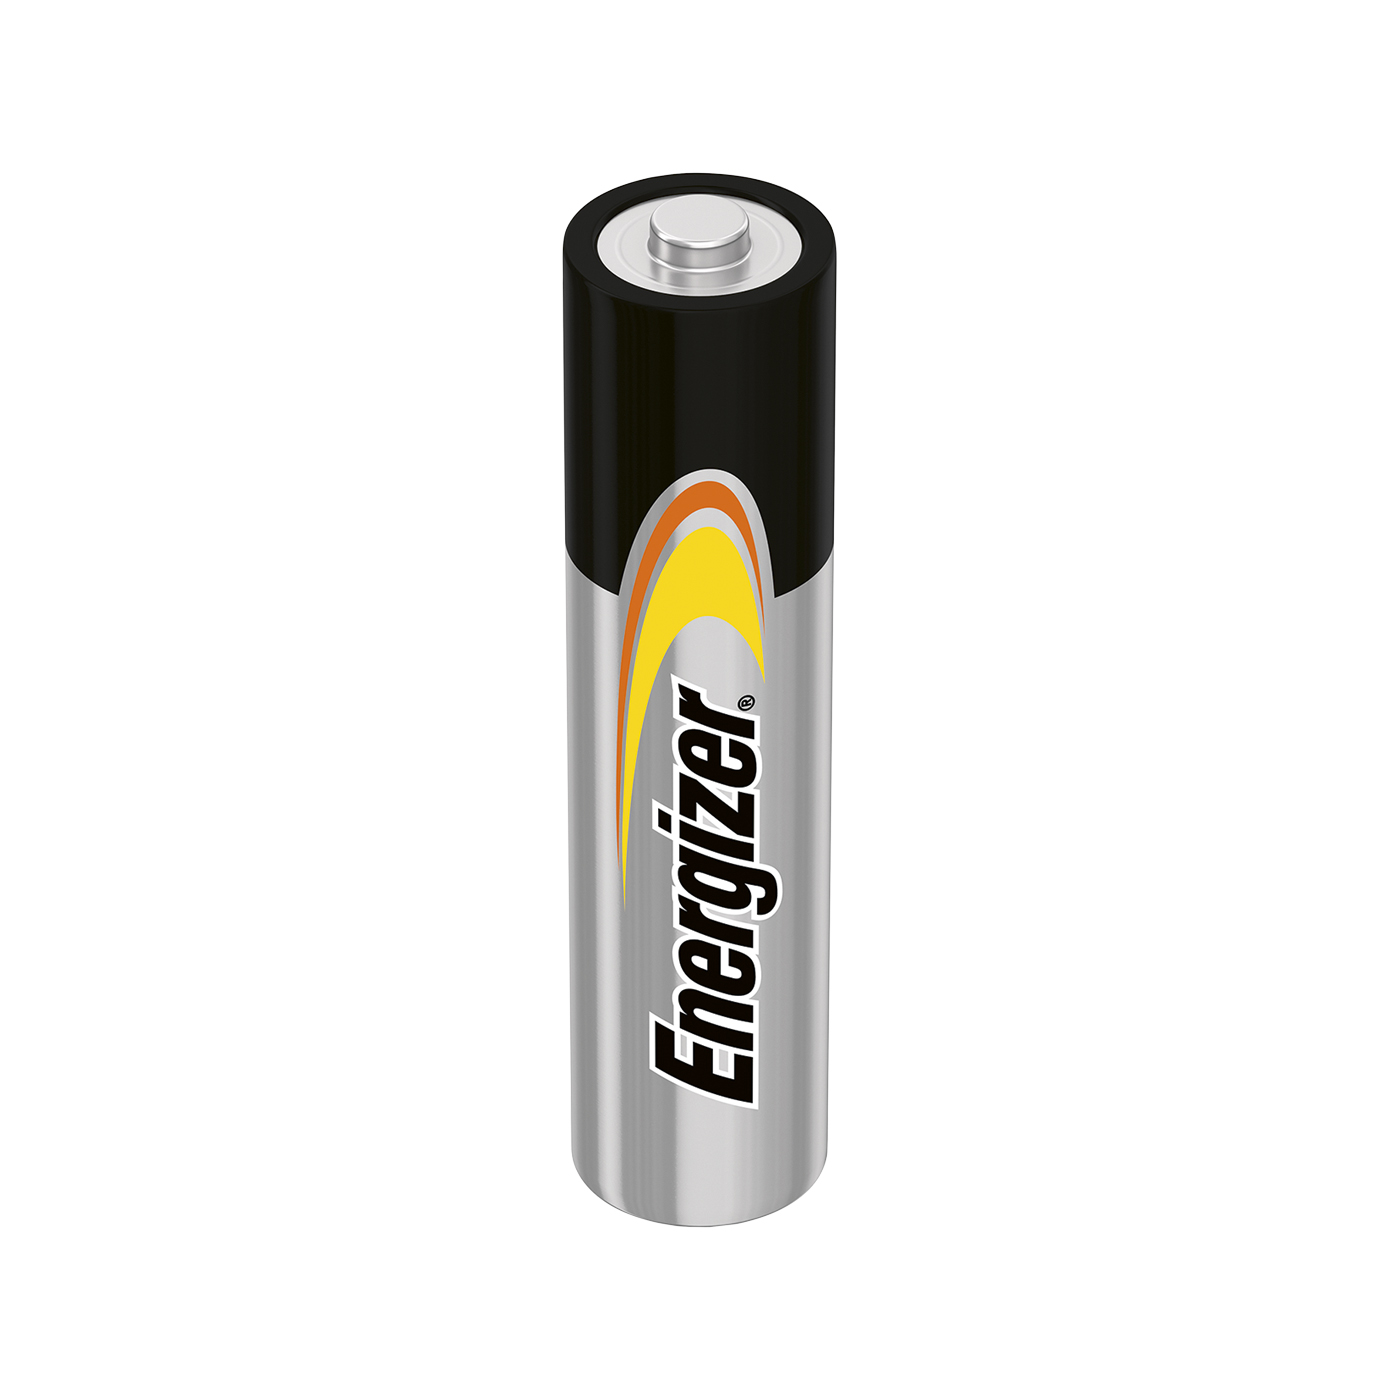 Batterie, Energizer, Micro AAA - LR03, ø 10,5 x 44,5 mm - 4 Stück